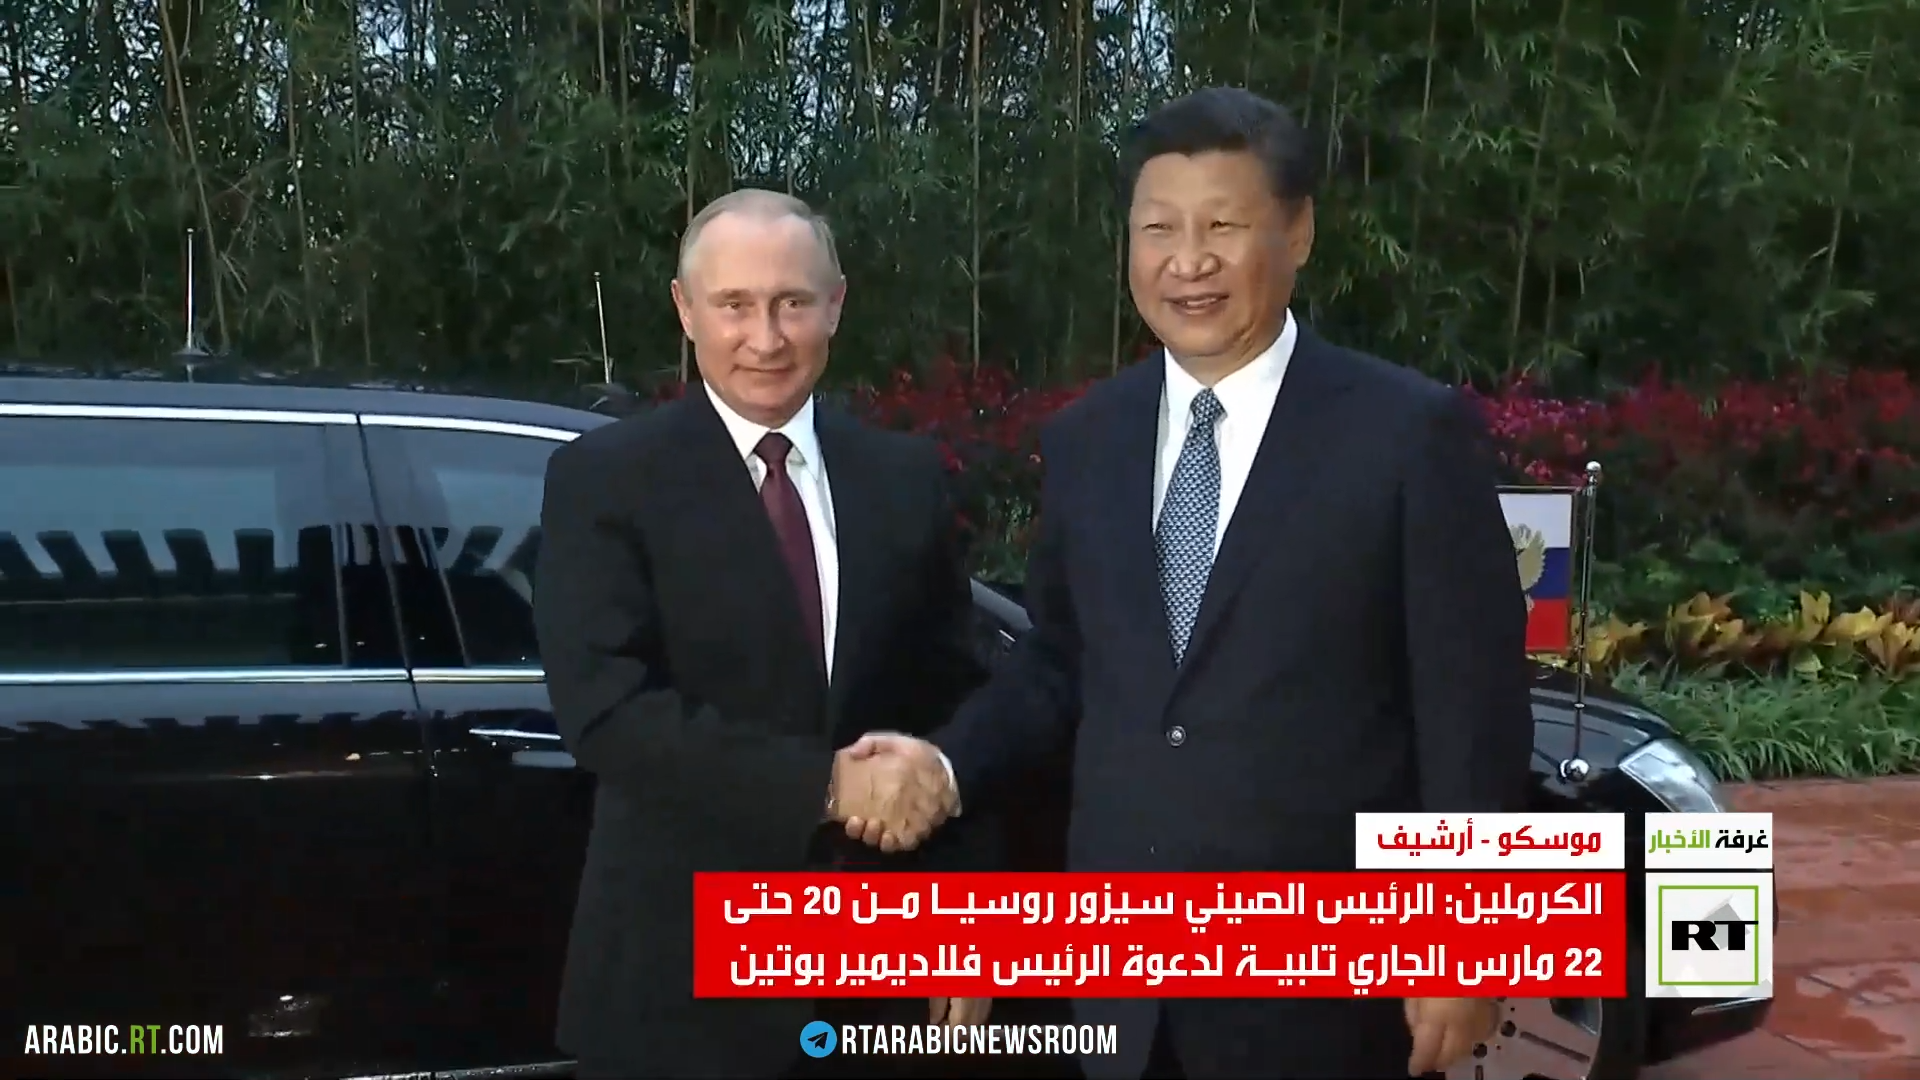 الكرملين: الرئيس الصيني سيزور موسكو الاثنين المقبل